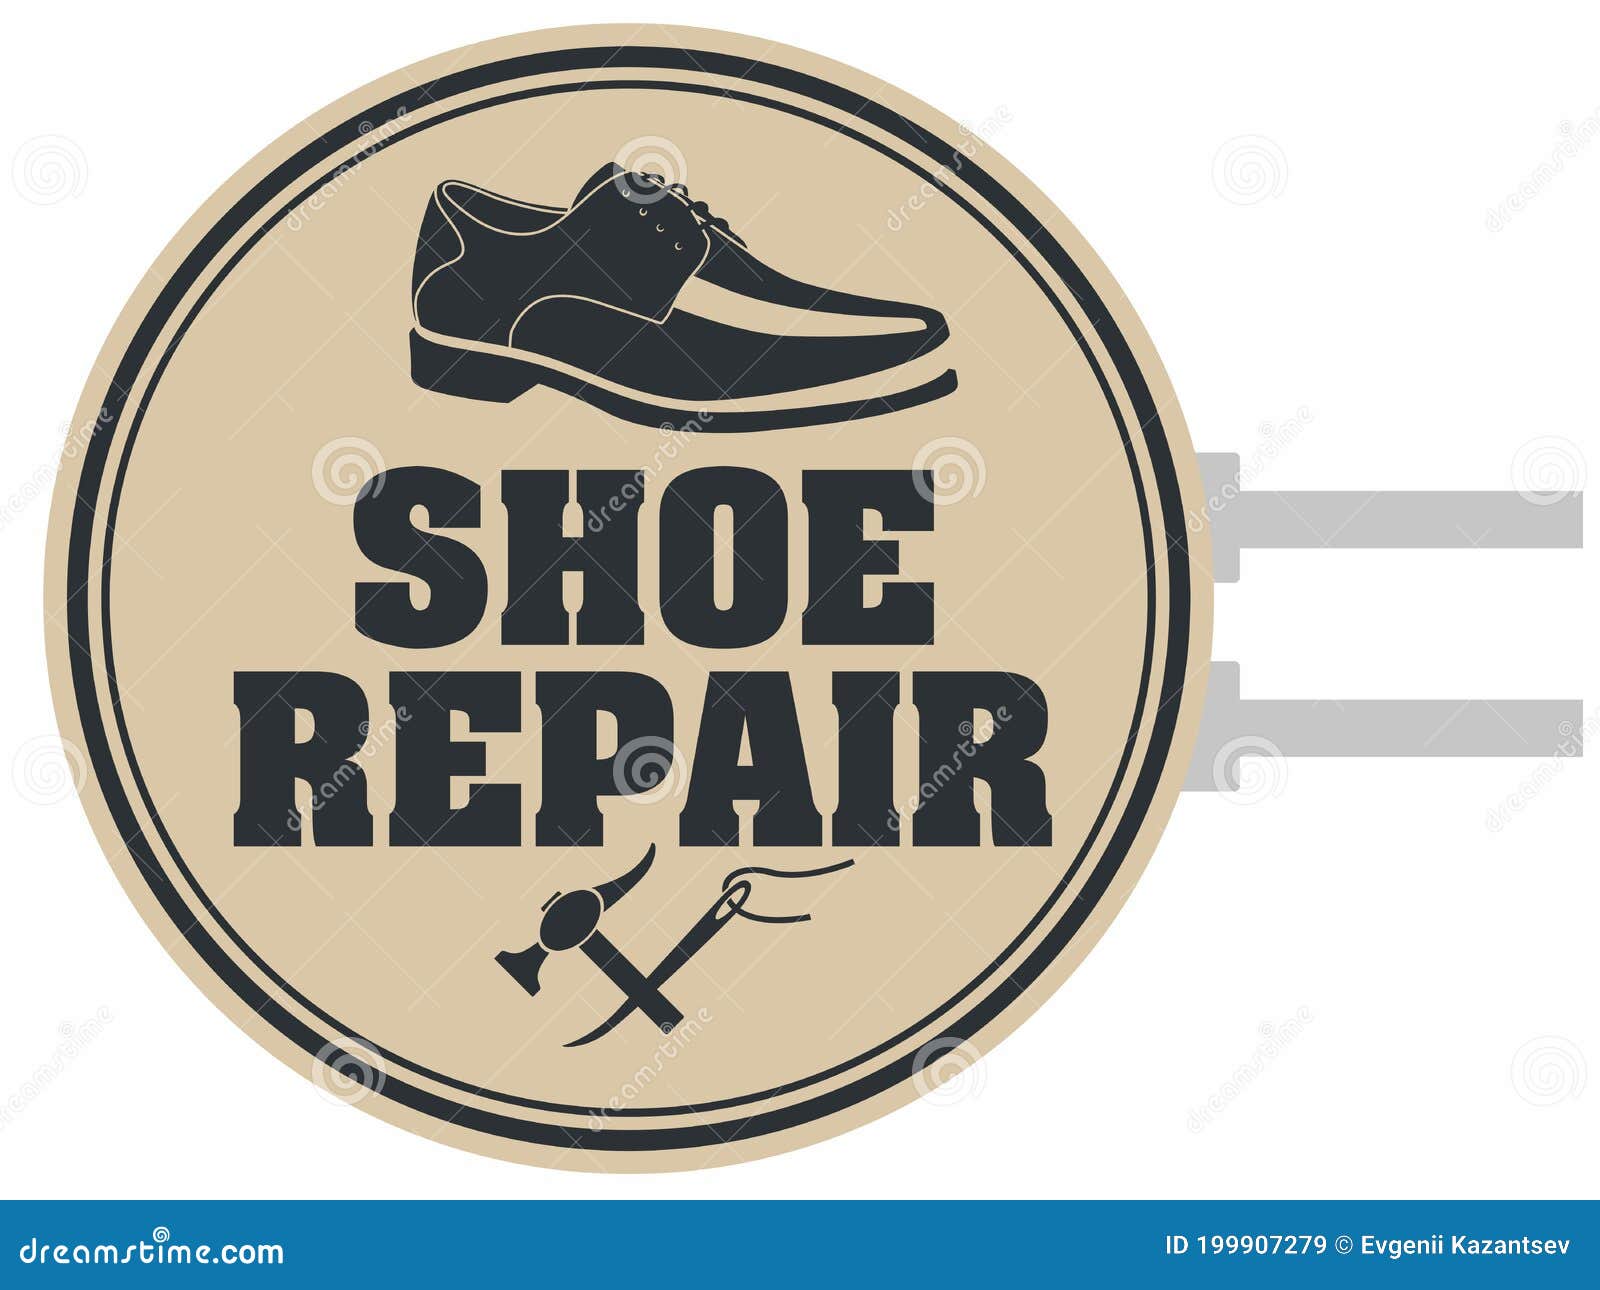 Shoe Repair Logo Stock Illustrations – 992 Shoe Repair Logo Stock  Illustrations, Vectors & Clipart - Dreamstime